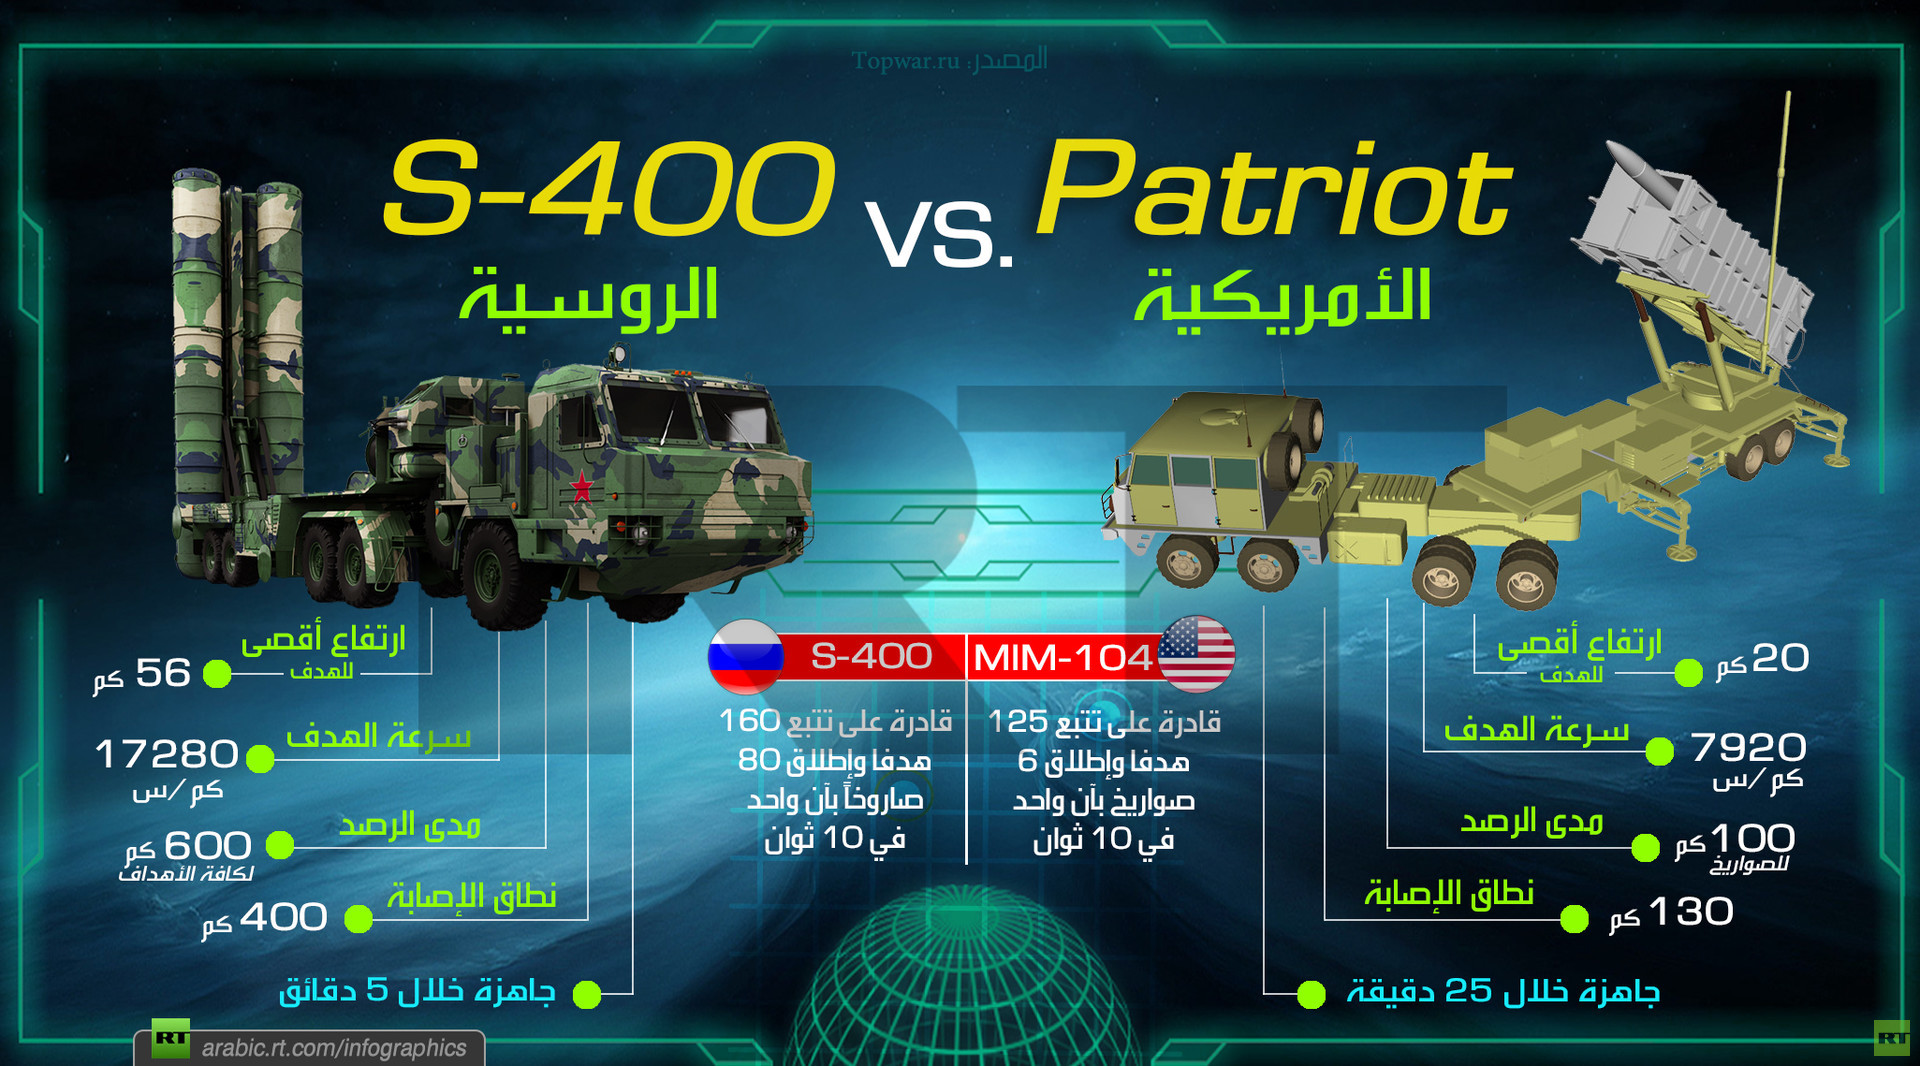 لماذا فضلت السعودية وتركيا منظومة S-400 الدفاعية الروسية على باتريوت الامريكية